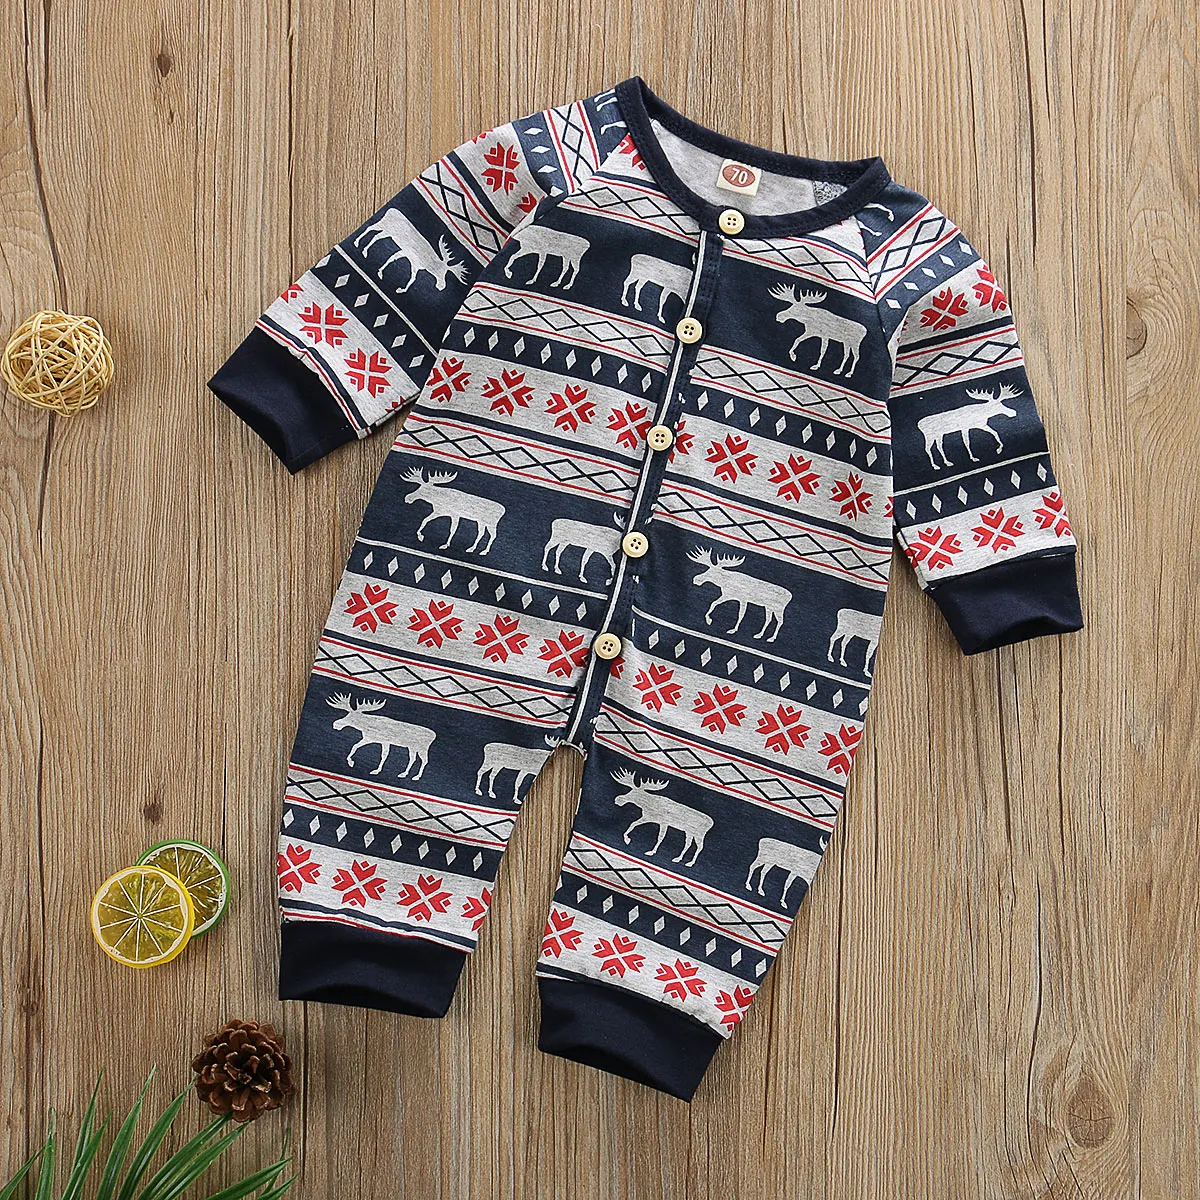 Коллекция года, детская Рождественская одежда Рождественский хлопковый комбинезон для новорожденных мальчиков и девочек, Рождественский комбинезон с рисунком оленя, одежда для детей возрастом от 0 до 18 месяцев